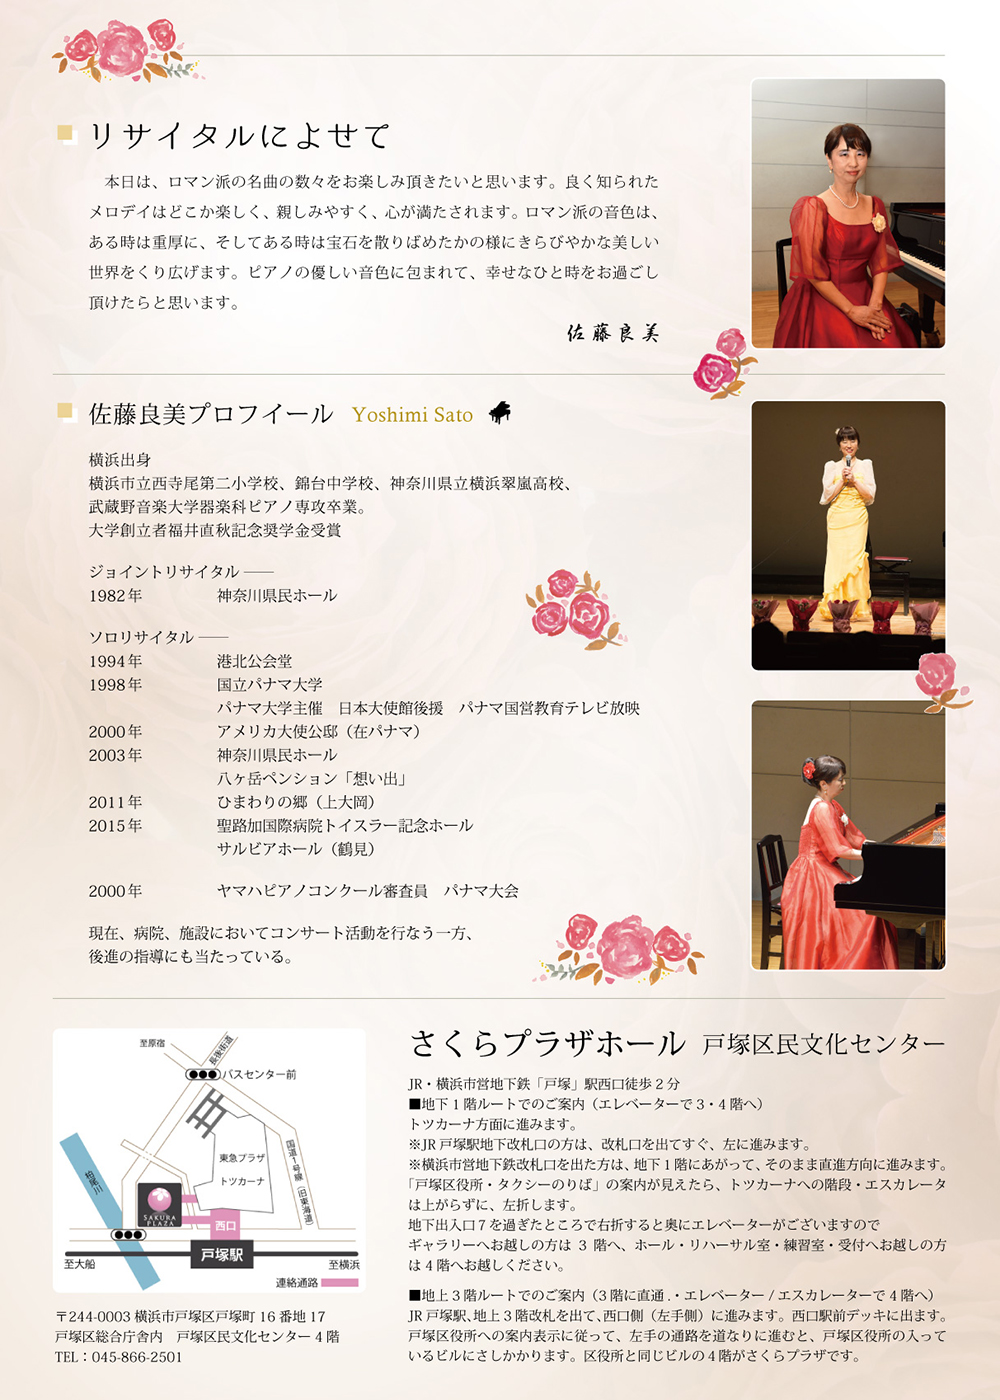 同期の佐藤良美さんのピアノリサイタルが開催されます 翠嵐会